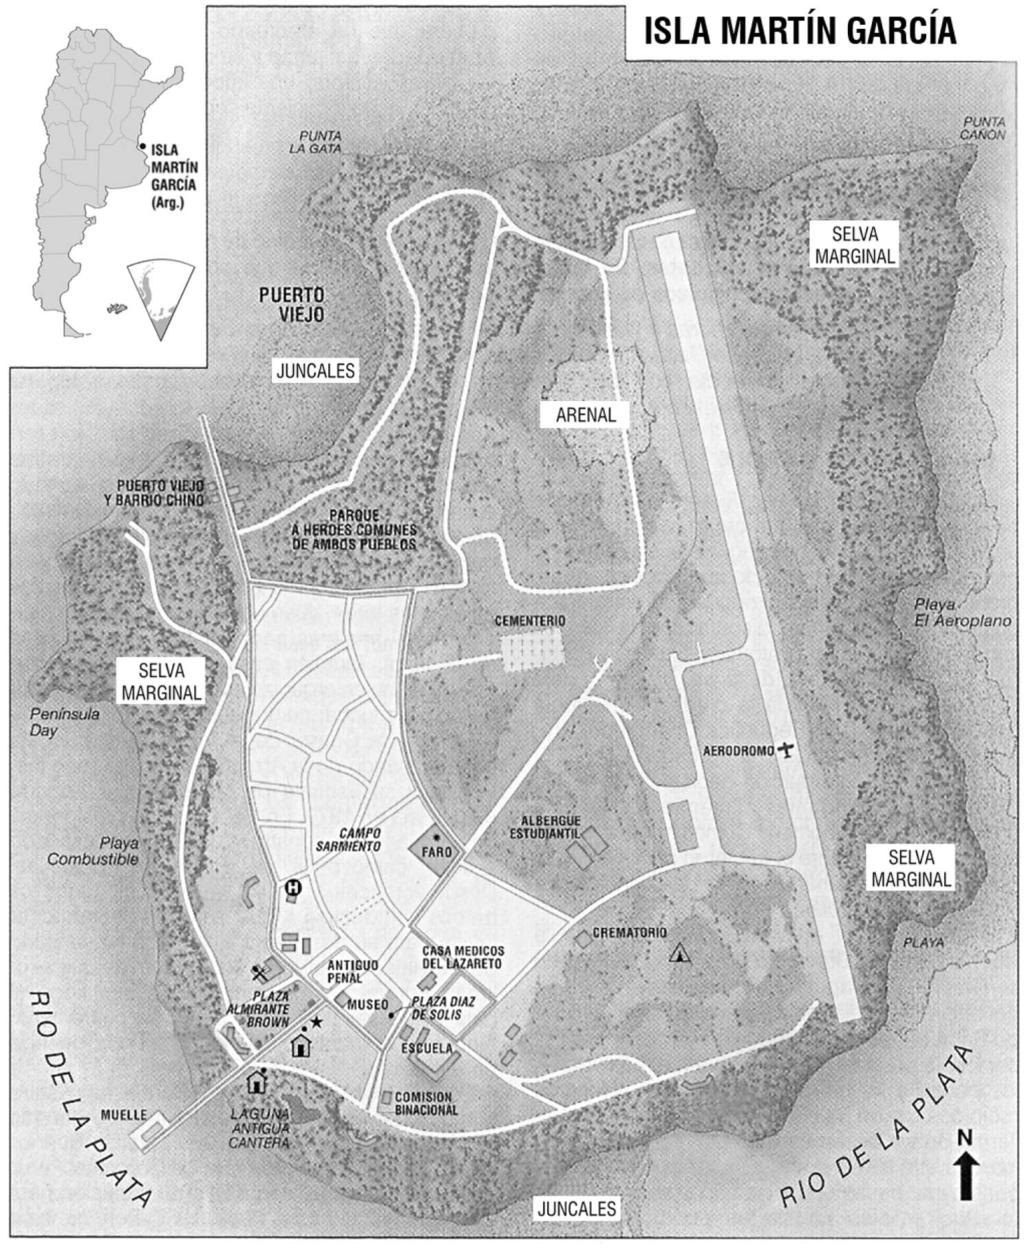 SHILAP Nº 139 24/9/07 19:10 Página 308 E. NÚÑEZ BUSTOS Fig. 1. Mapa de la isla Martín García y situación relativa en la Argentina.